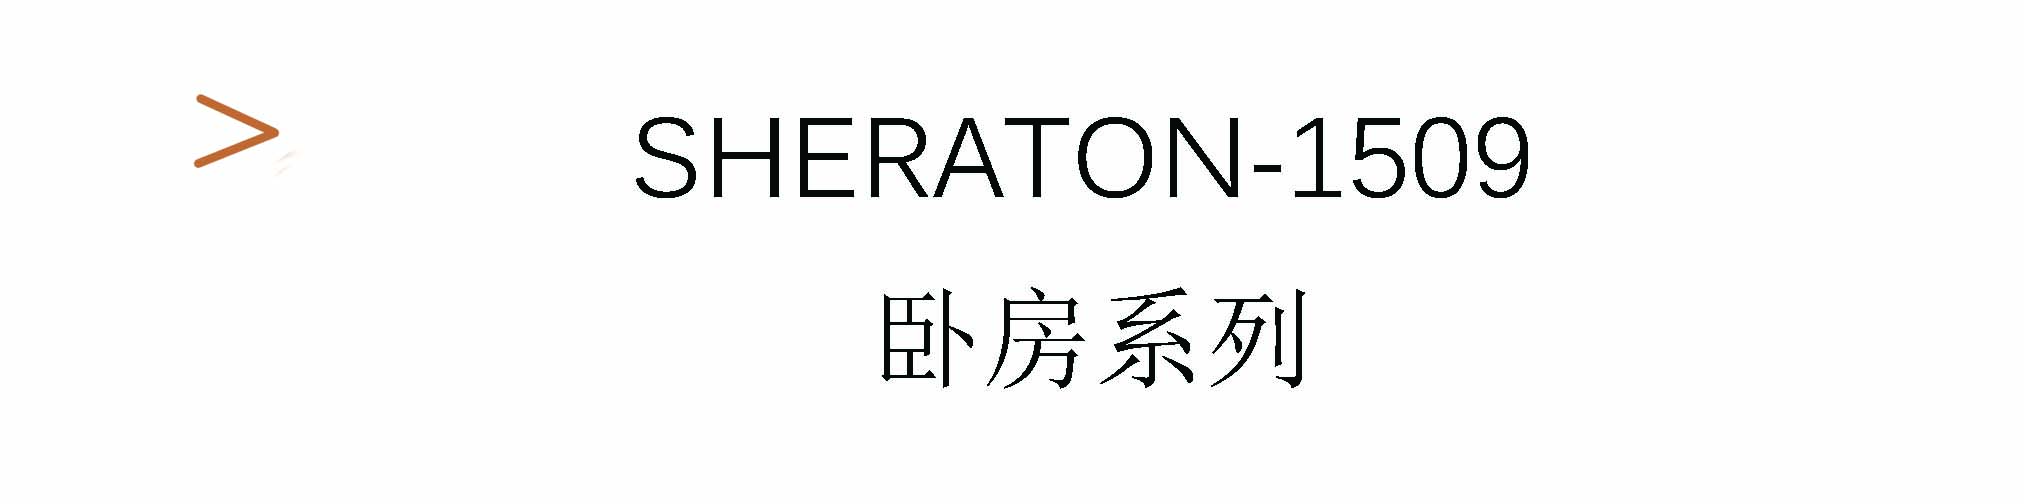 Sheraton-1509